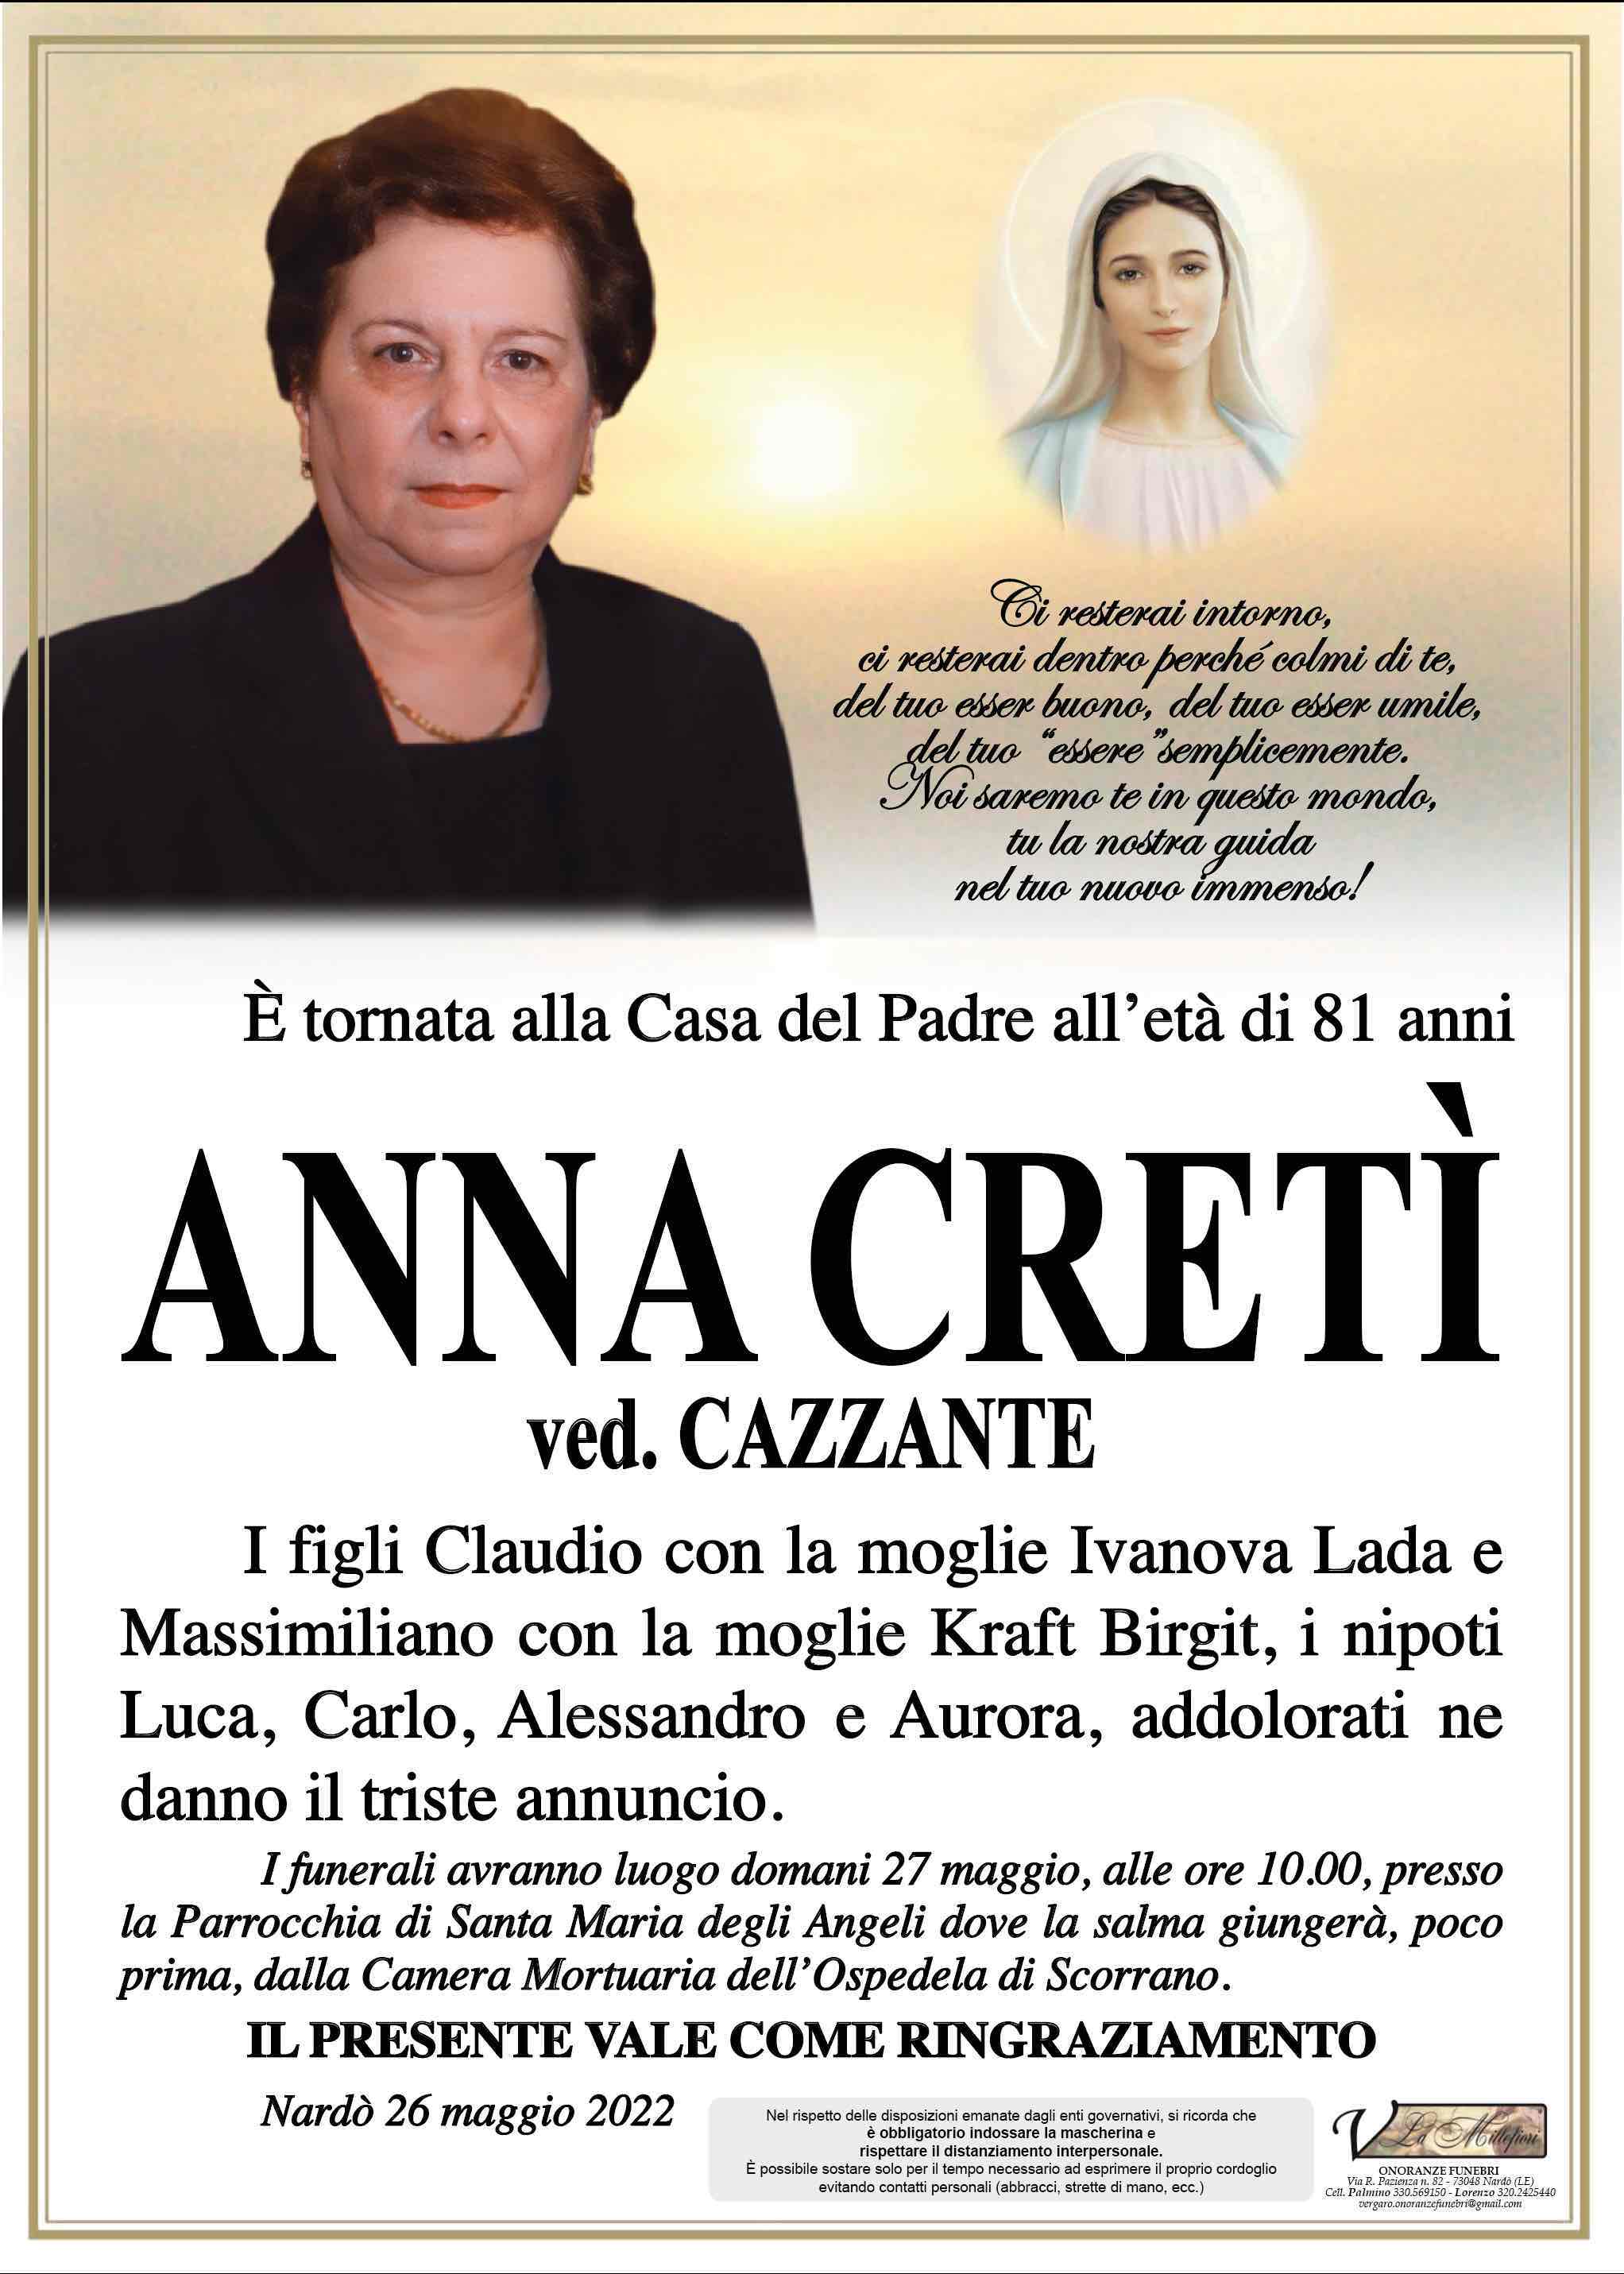 Anna Cretì